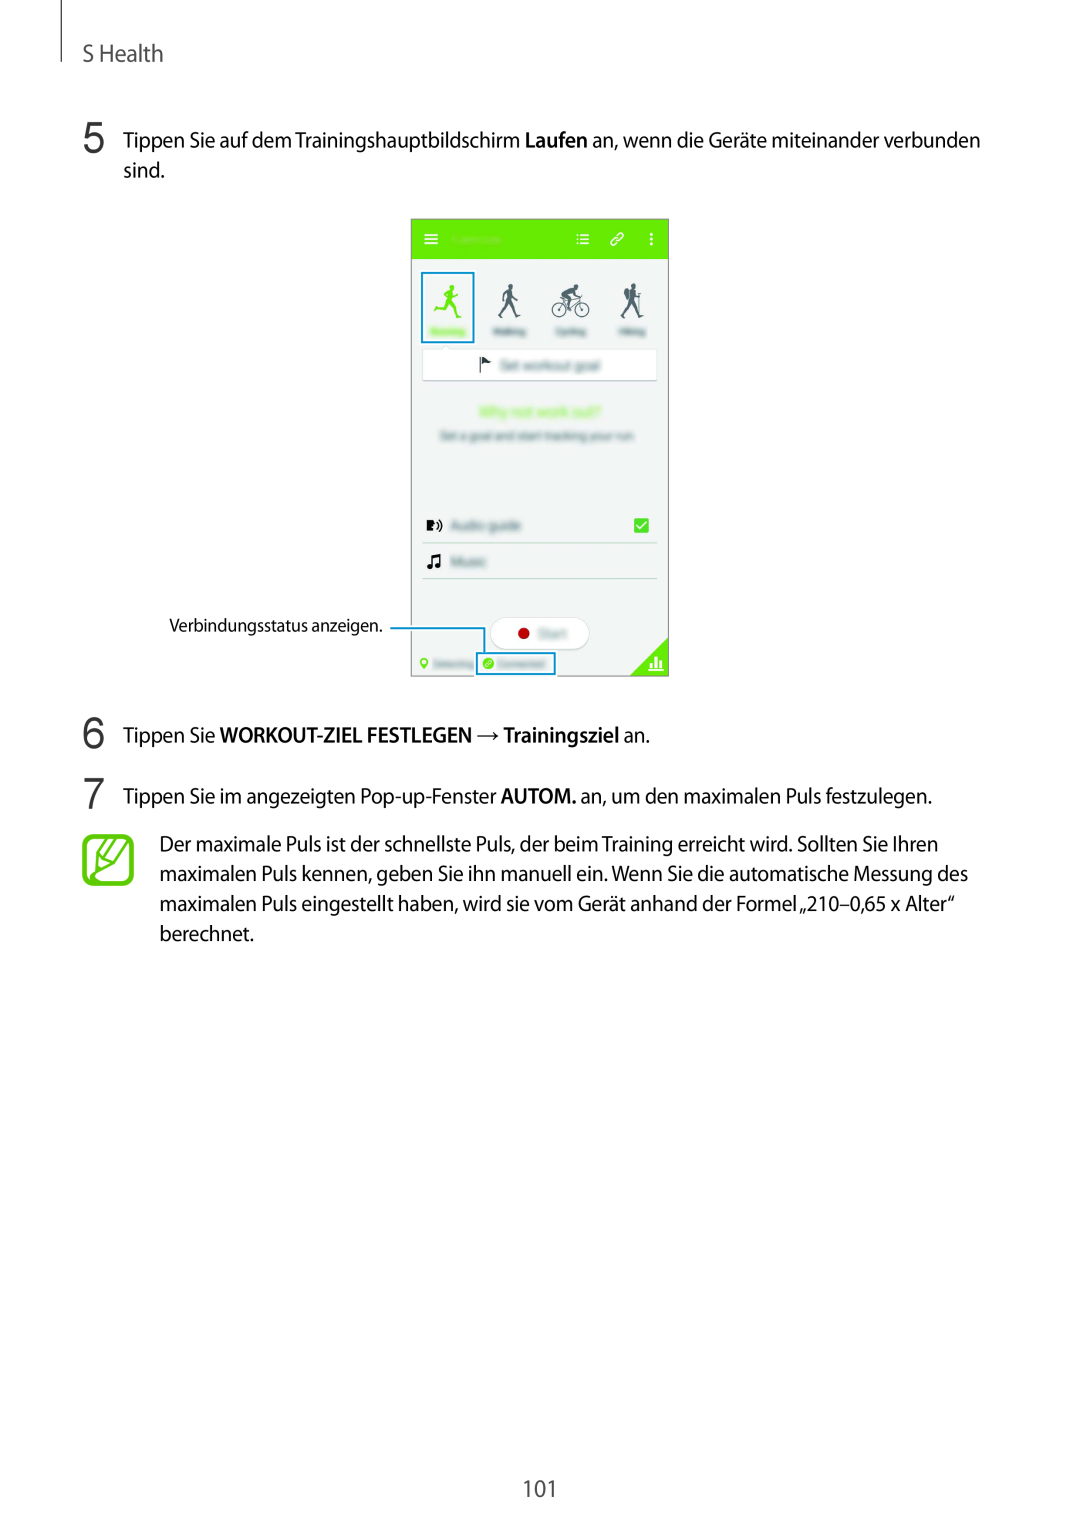 Samsung SM-G901FZKABOG manual S Health, Tippen Sie WORKOUT-ZIEL FESTLEGEN →Trainingsziel an, Verbindungsstatus anzeigen 